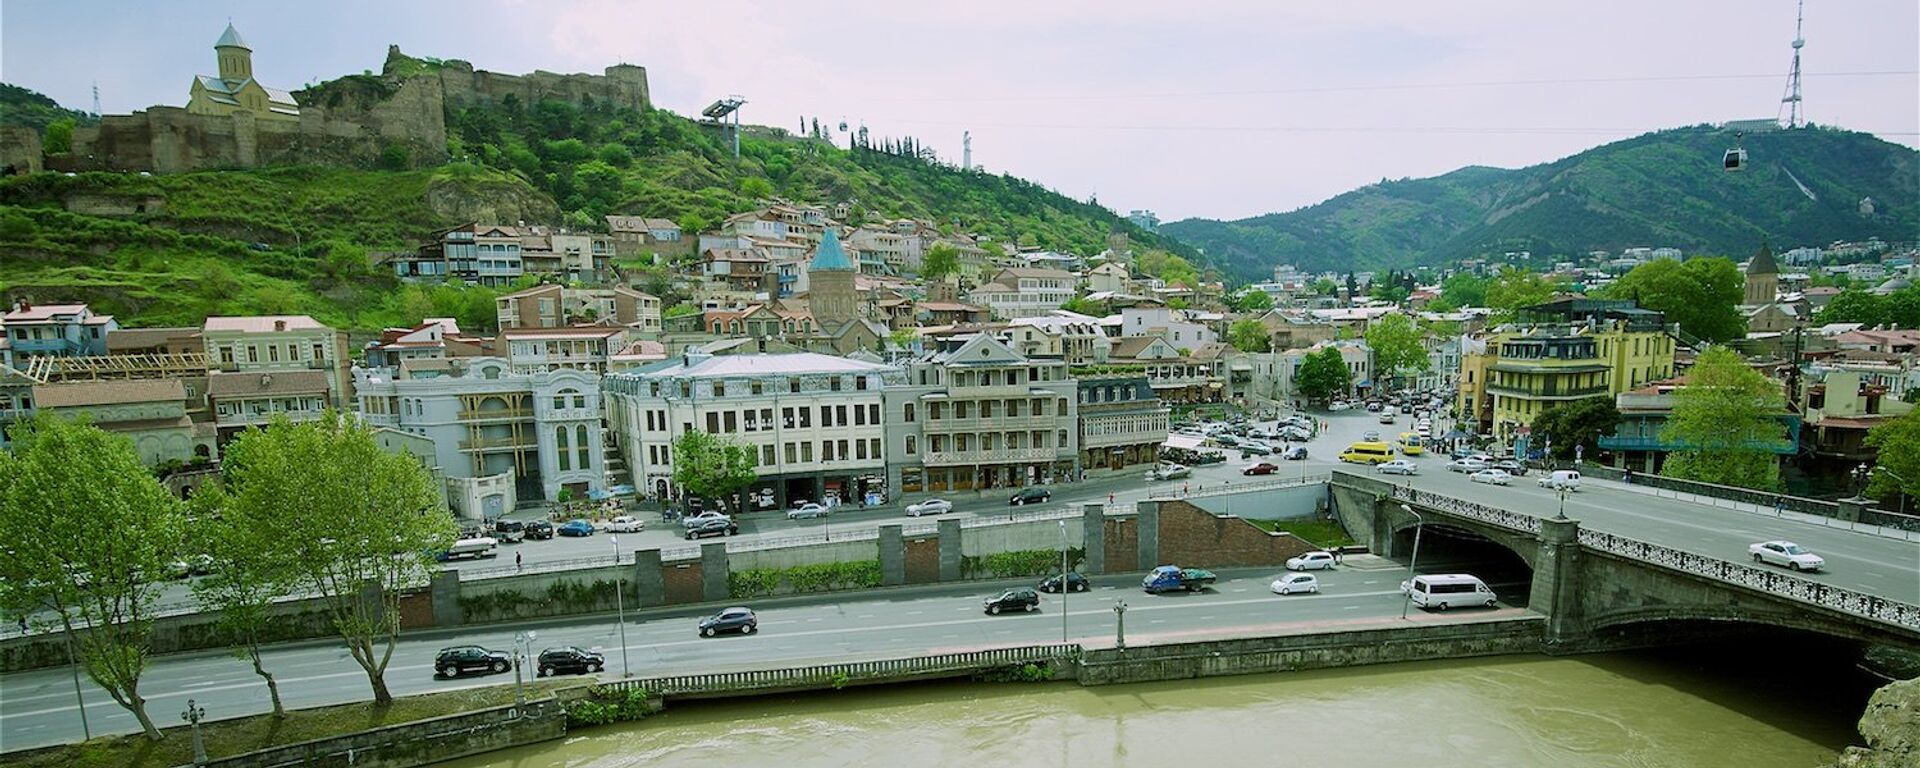 Исторический центр Тбилиси. Вид на крепость Нарикала, Майдан и гору Мтацминда - Sputnik Грузия, 1920, 01.10.2020